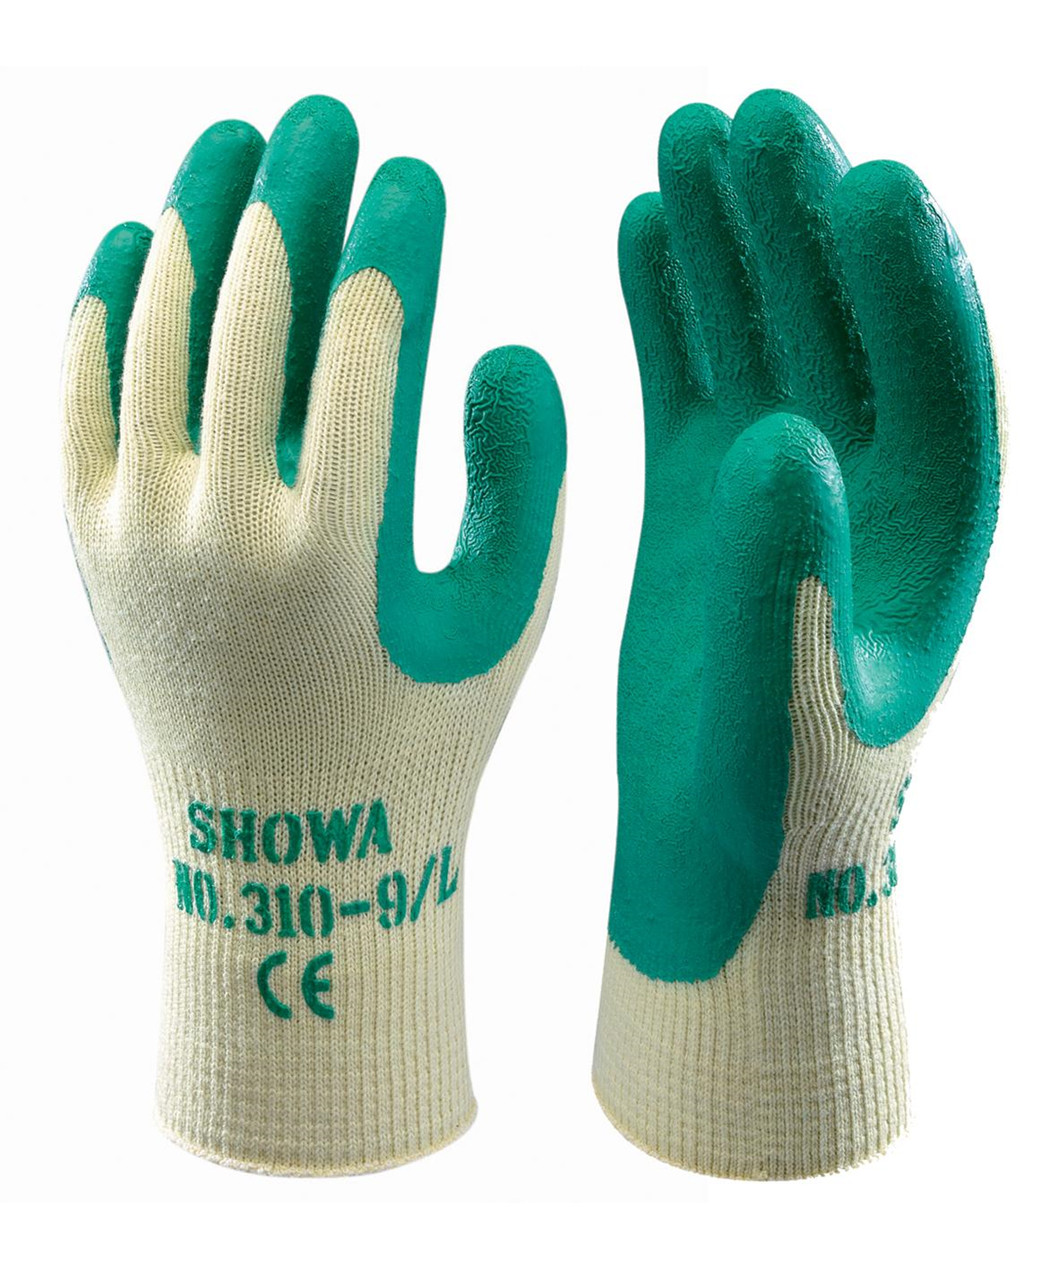 Se Showa 310 Grip handske (9) hos Specialbutikken